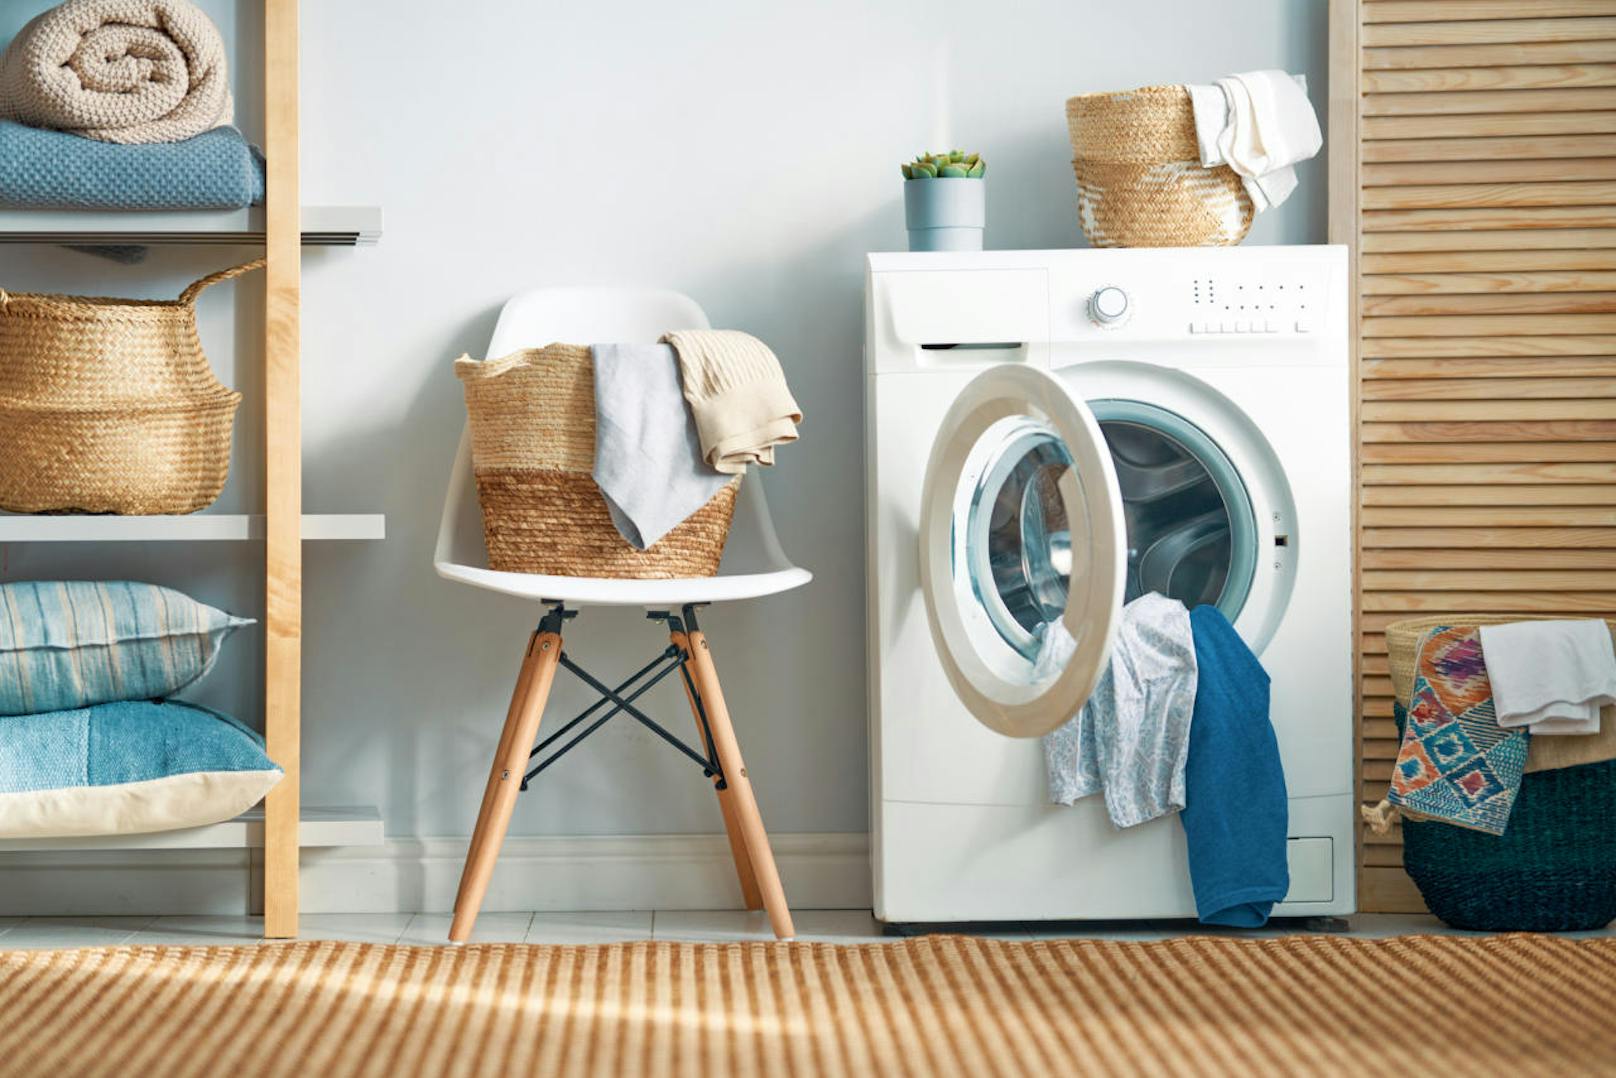 Richtig waschen: Dank moderner Waschmaschinen und Waschmittel reichen für normal verschmutzte Wäsche 30-40° C völlig aus.